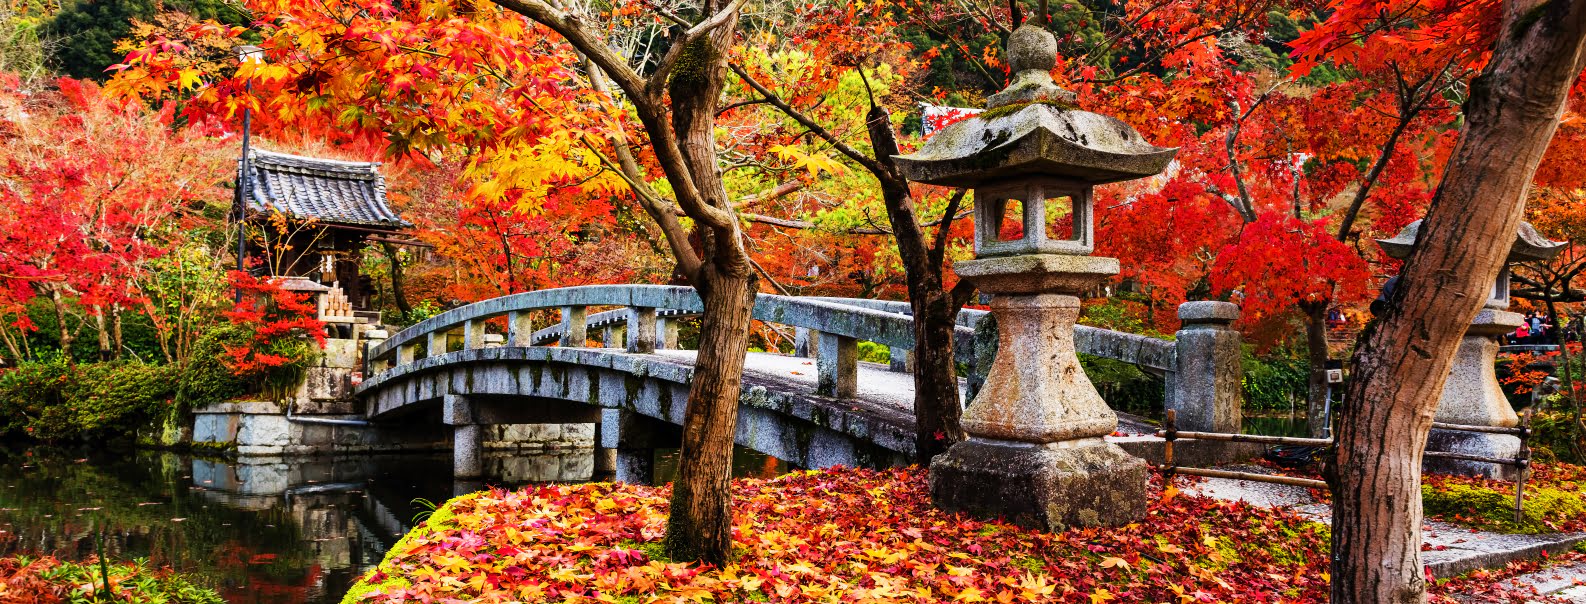 ชมใบไม้เปลี่ยนสีที่ญี่ปุ่น: 7 ทริปเดินเขา ชมใบไม้เปลี่ยนสีสุดฟิน  ถ่ายรูปสวยทุกมุม